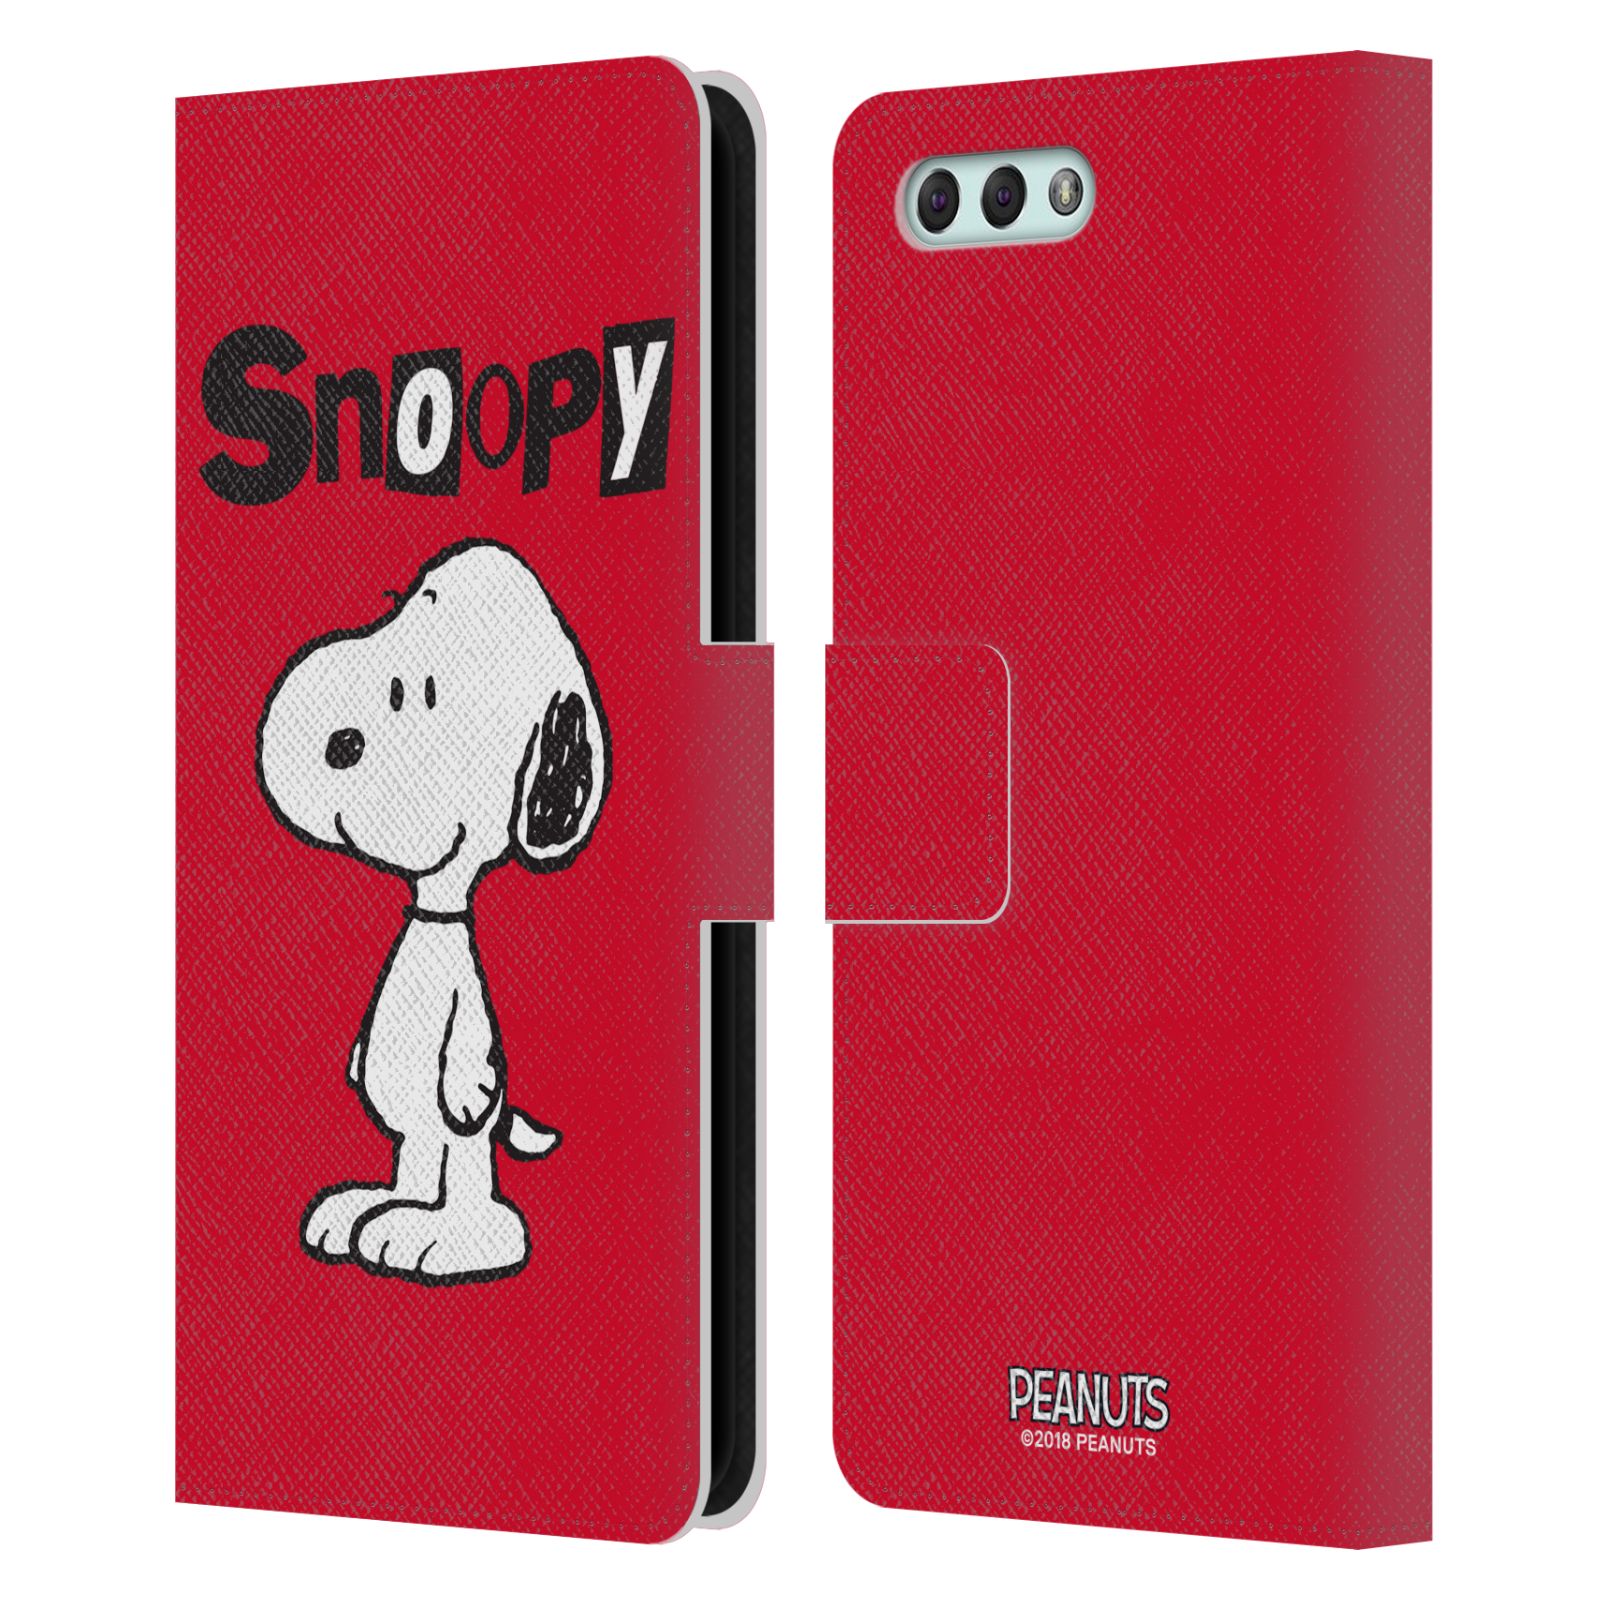 Pouzdro na mobil Asus Zenfone 4 ZE554KL  - HEAD CASE - Peanuts - Snoopy červená